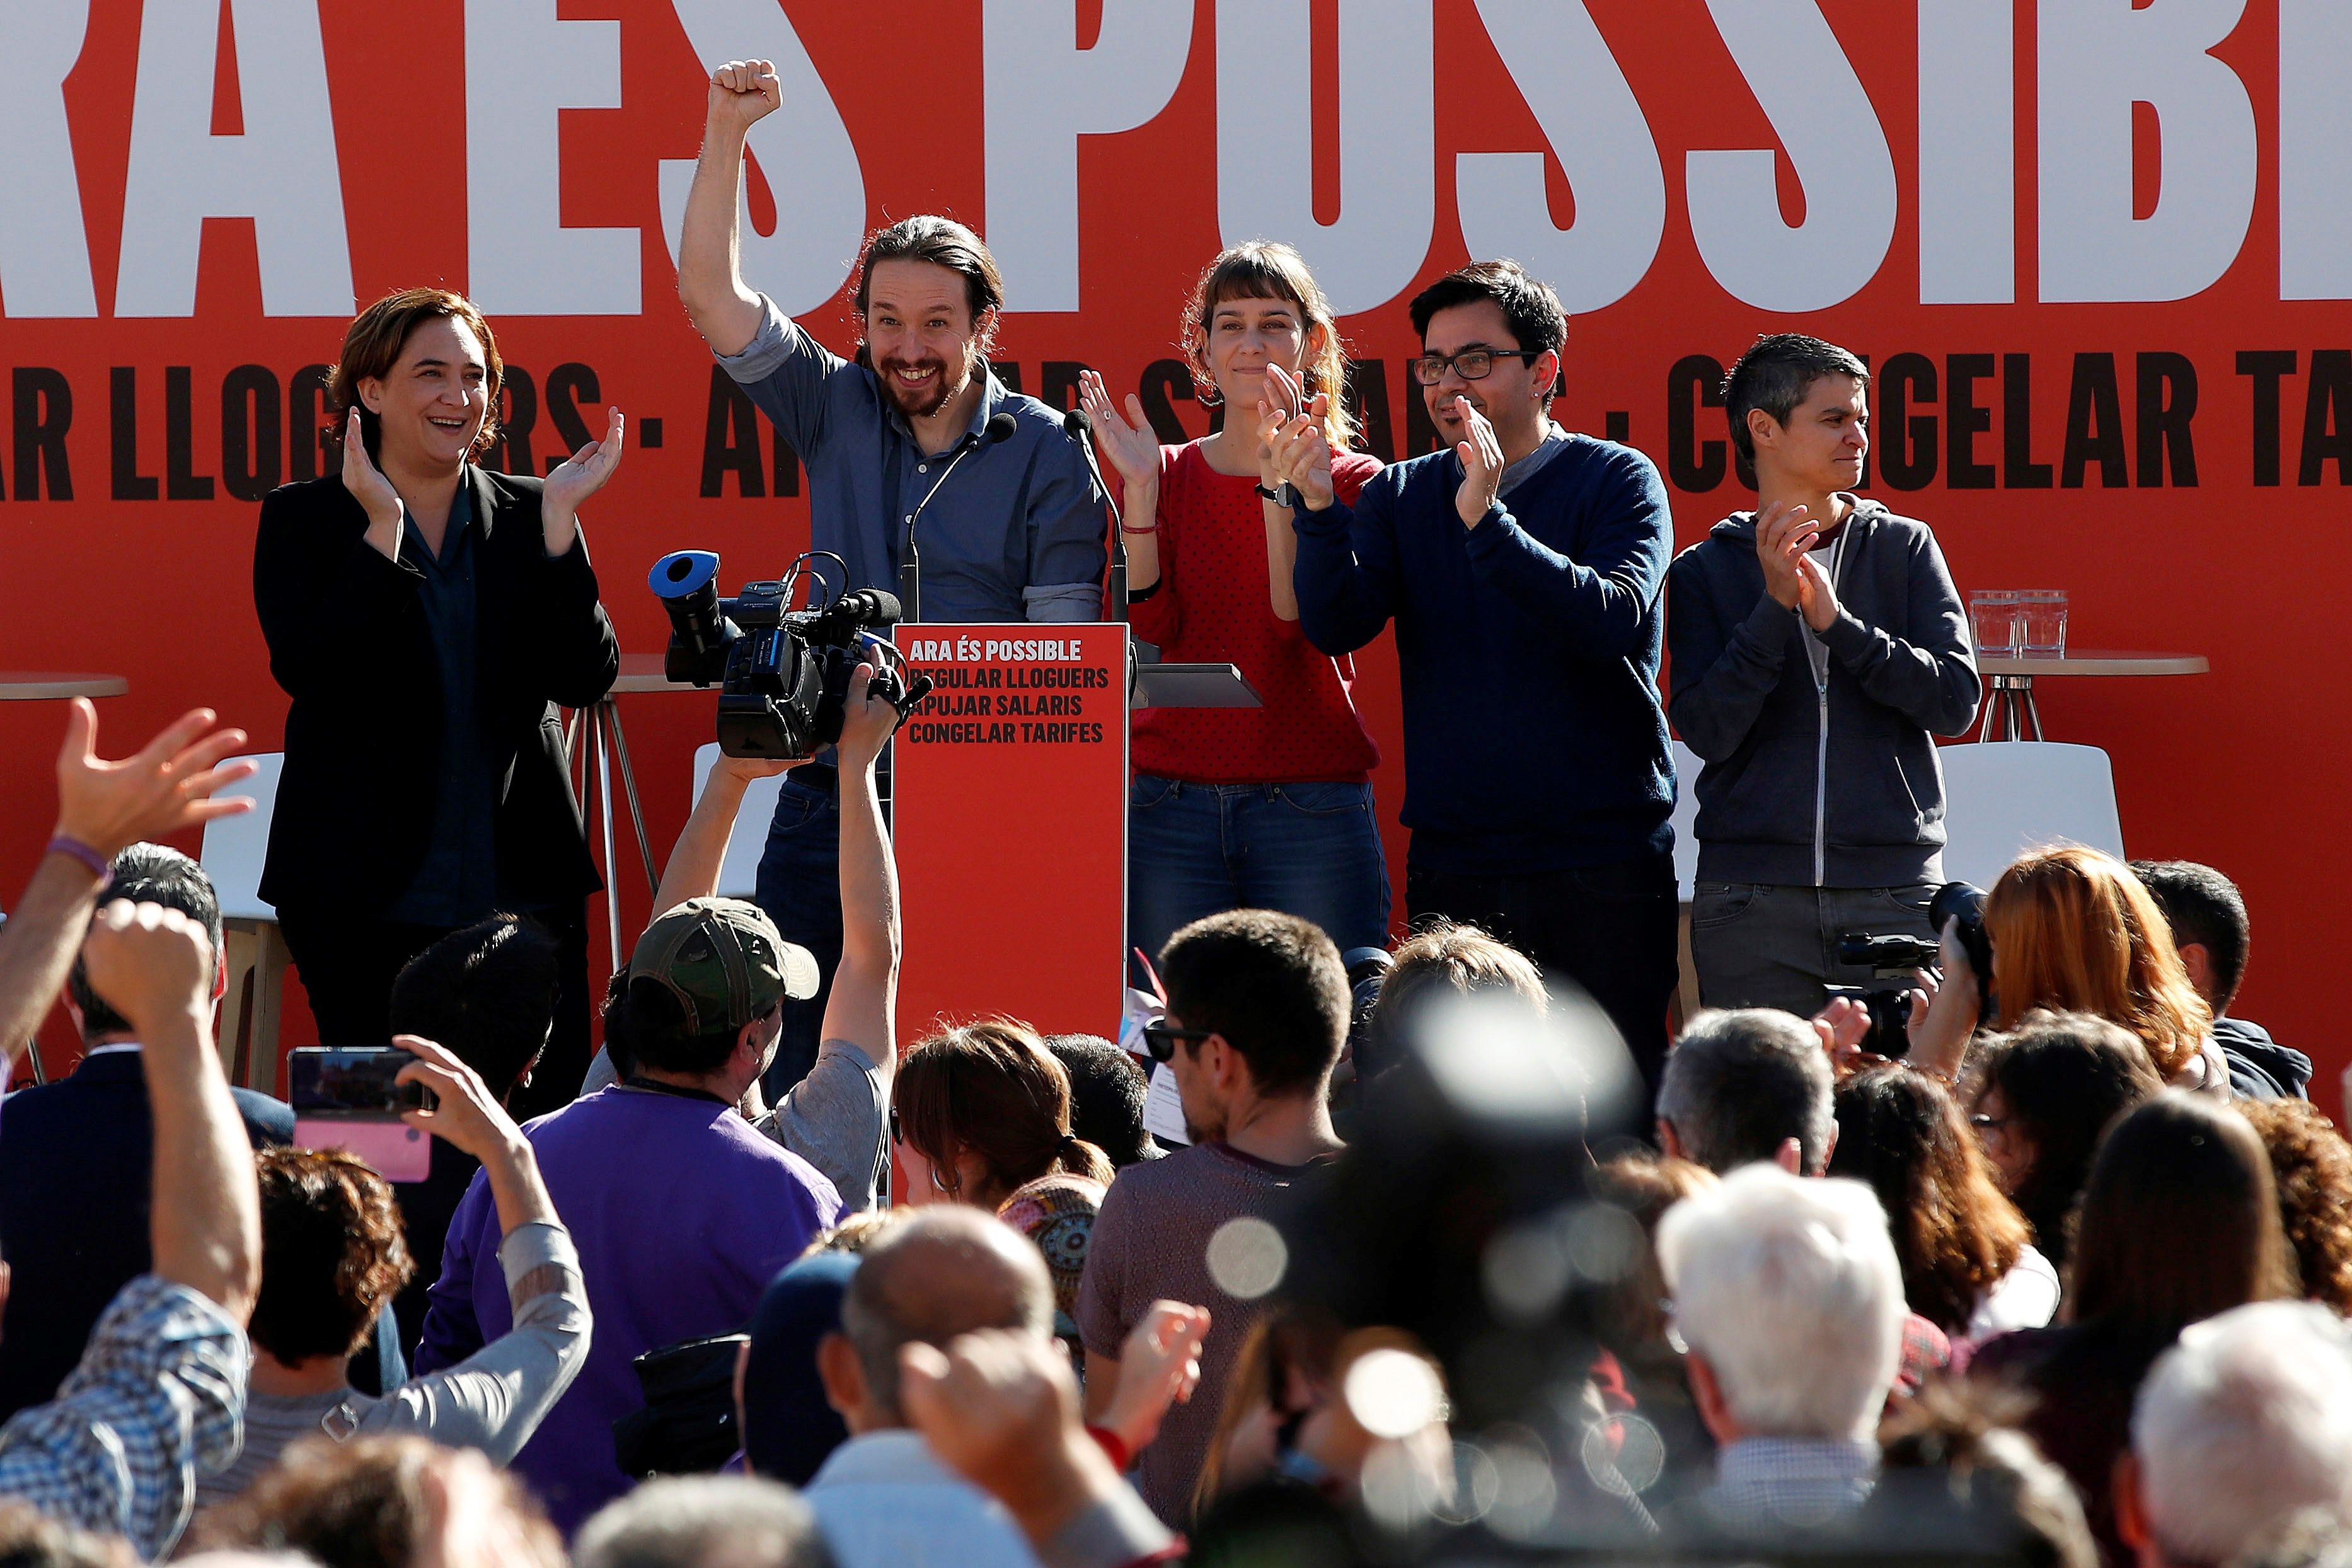 Iglesias avisa el PDeCAT i ERC: “Si anem a eleccions, el PP, Cs i Vox poden governar”